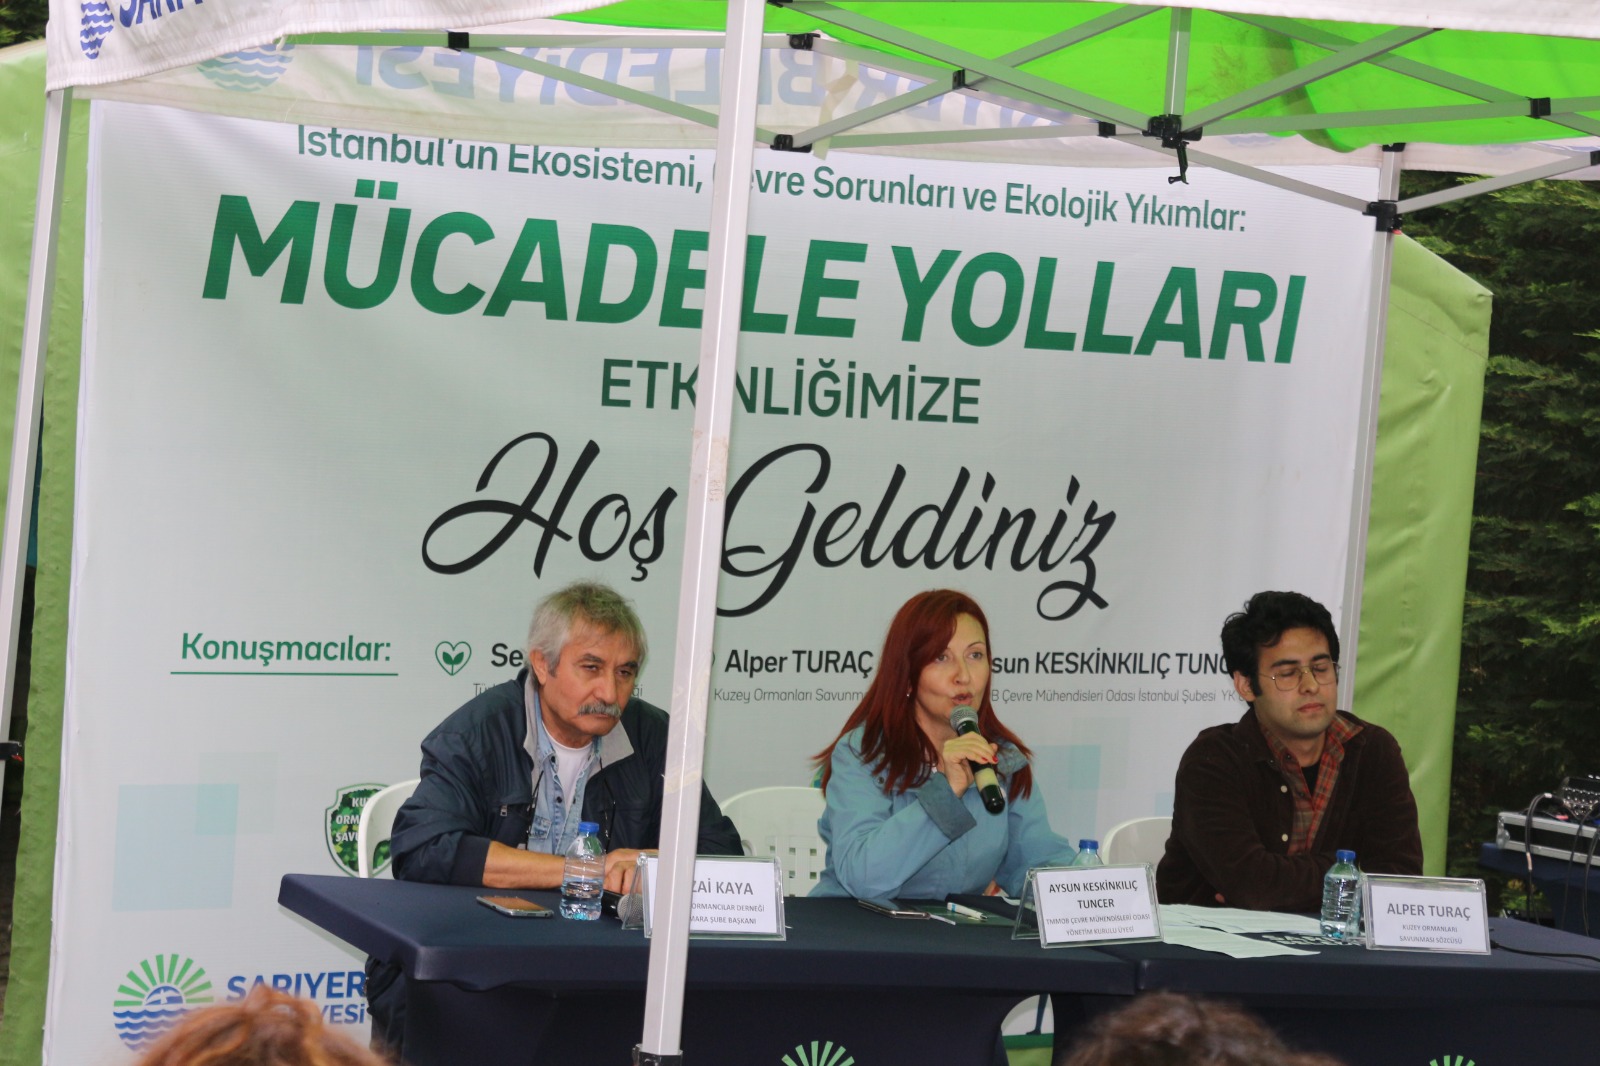 Atatürk Kent Ormanında  Gerçekleşen Panelde İstanbul'un Ekosistemi ve Ekolojik Yıkımlara Karşı Mücadele Yolları Tartışıldı